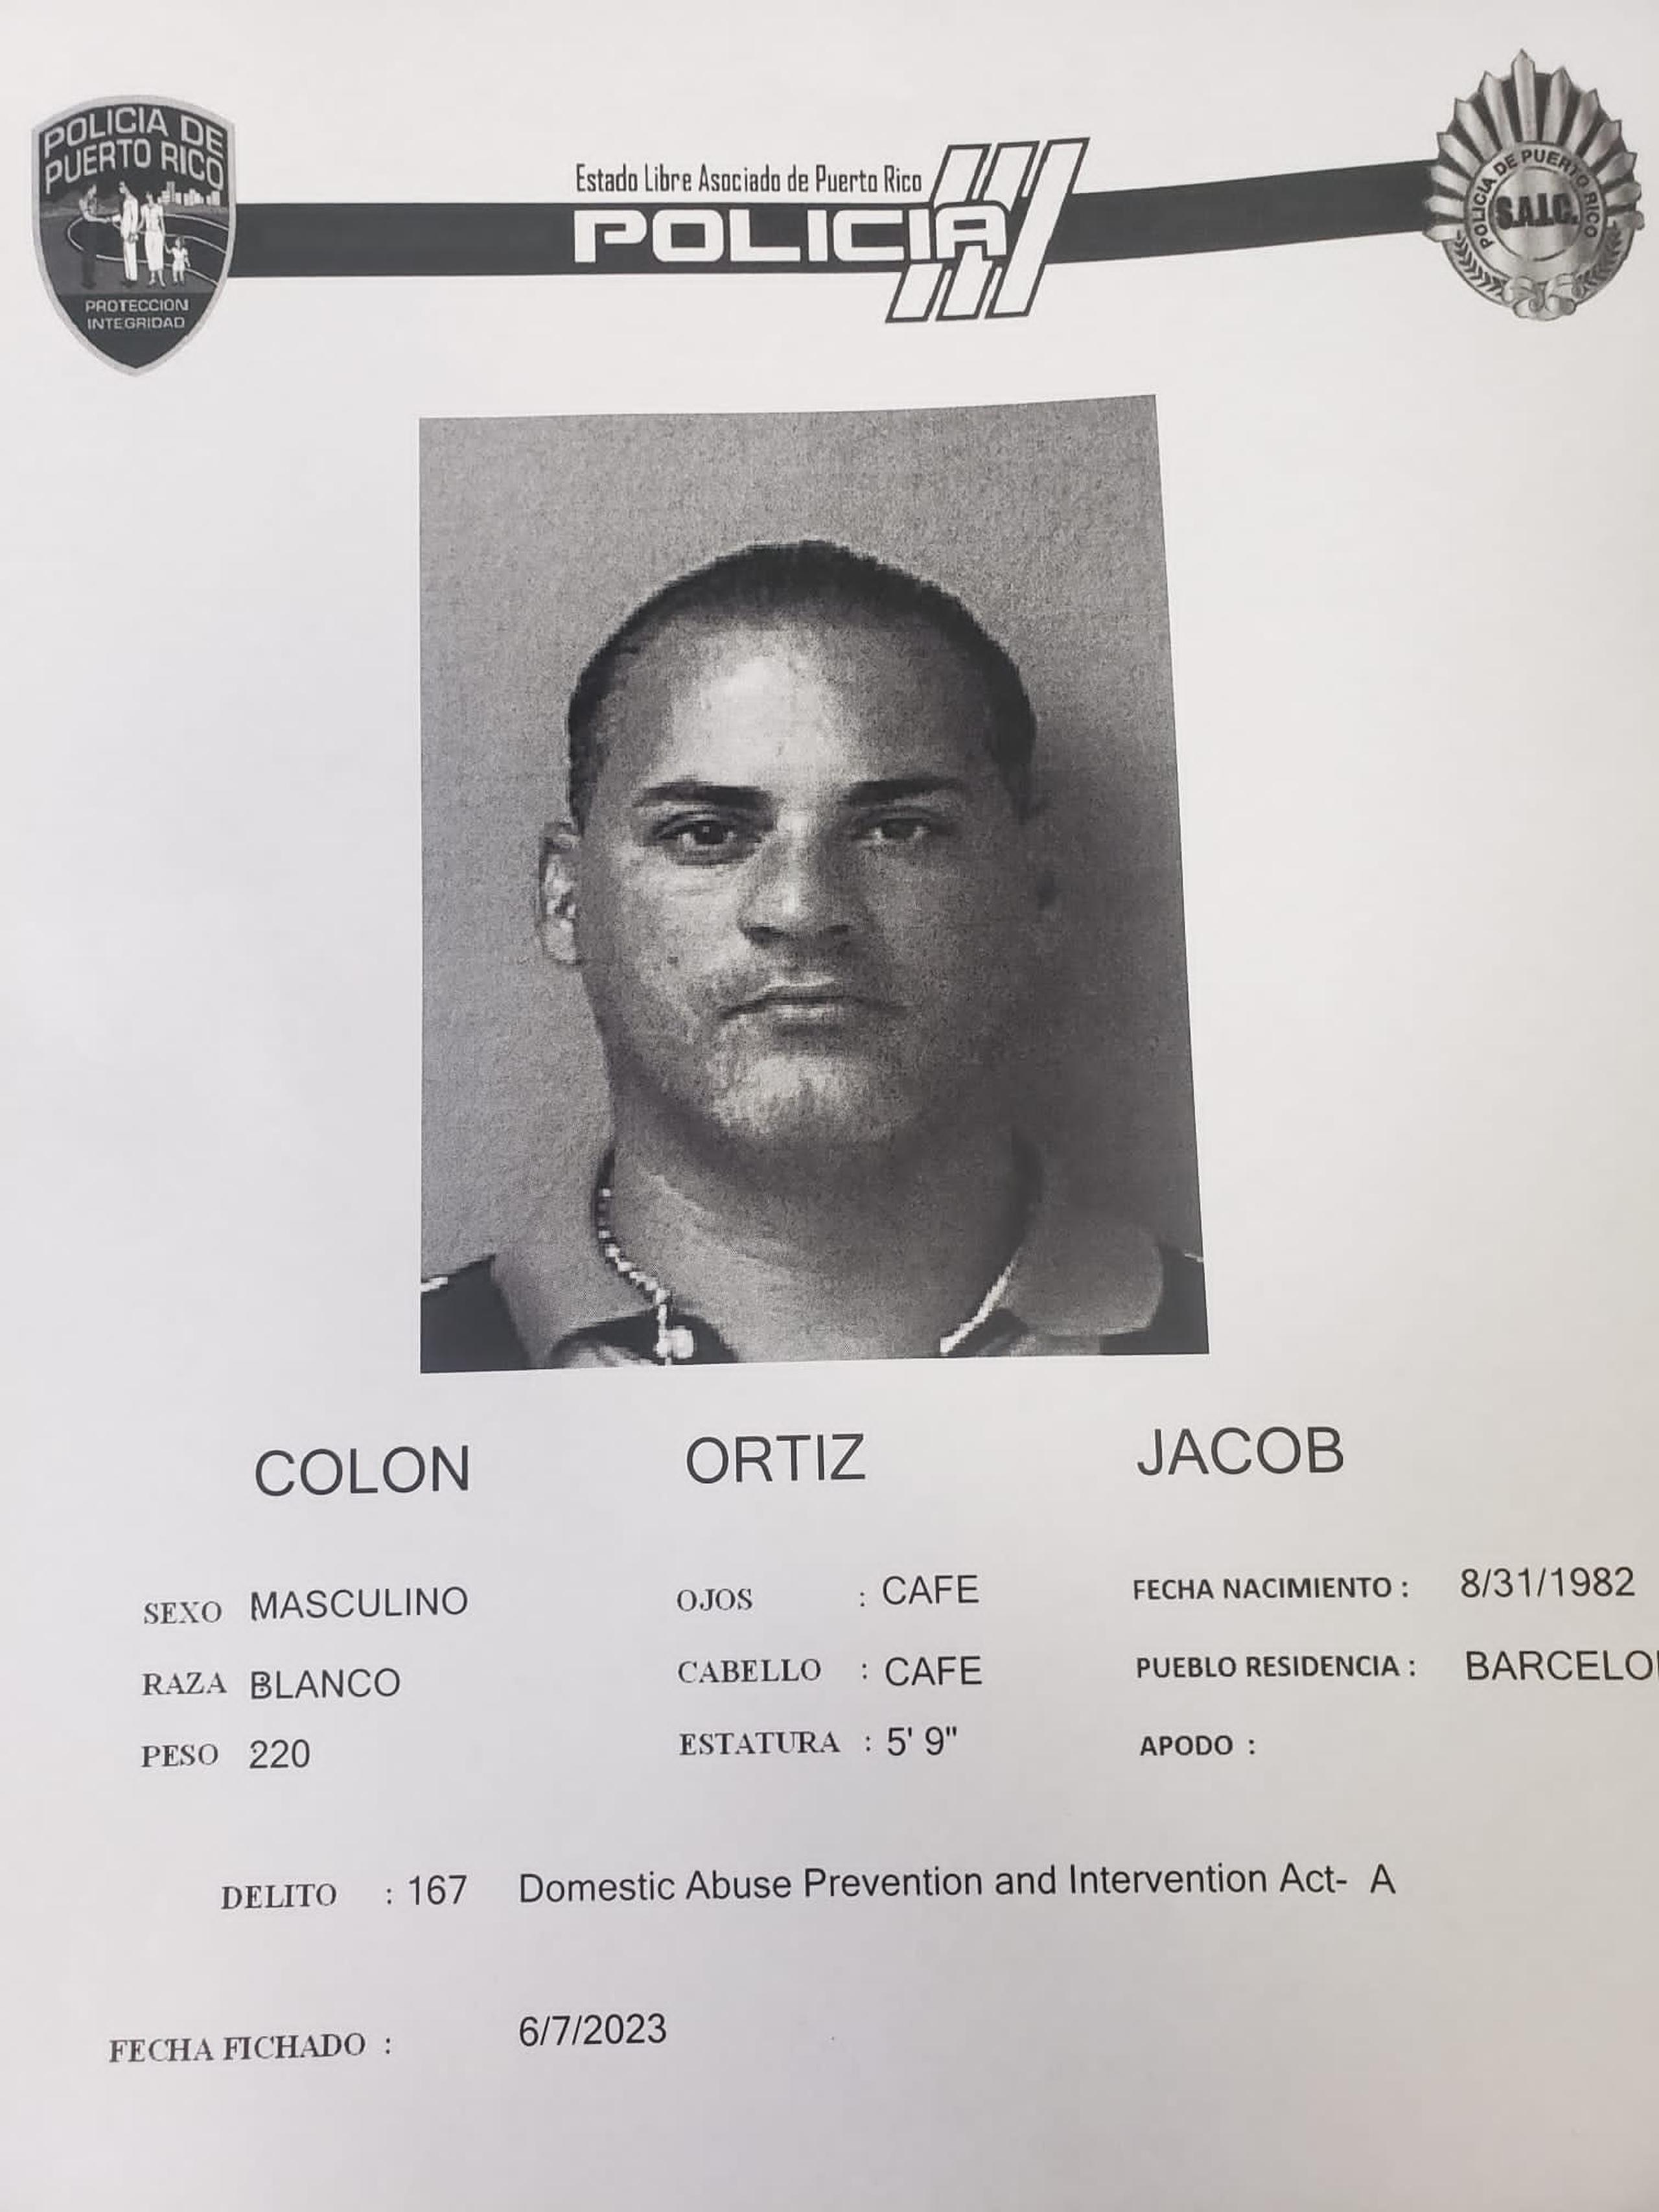 Jacob Colón Ortiz fue arrestado por violaci;on a la Ley de Armas, violencia de género y agresión sexual.